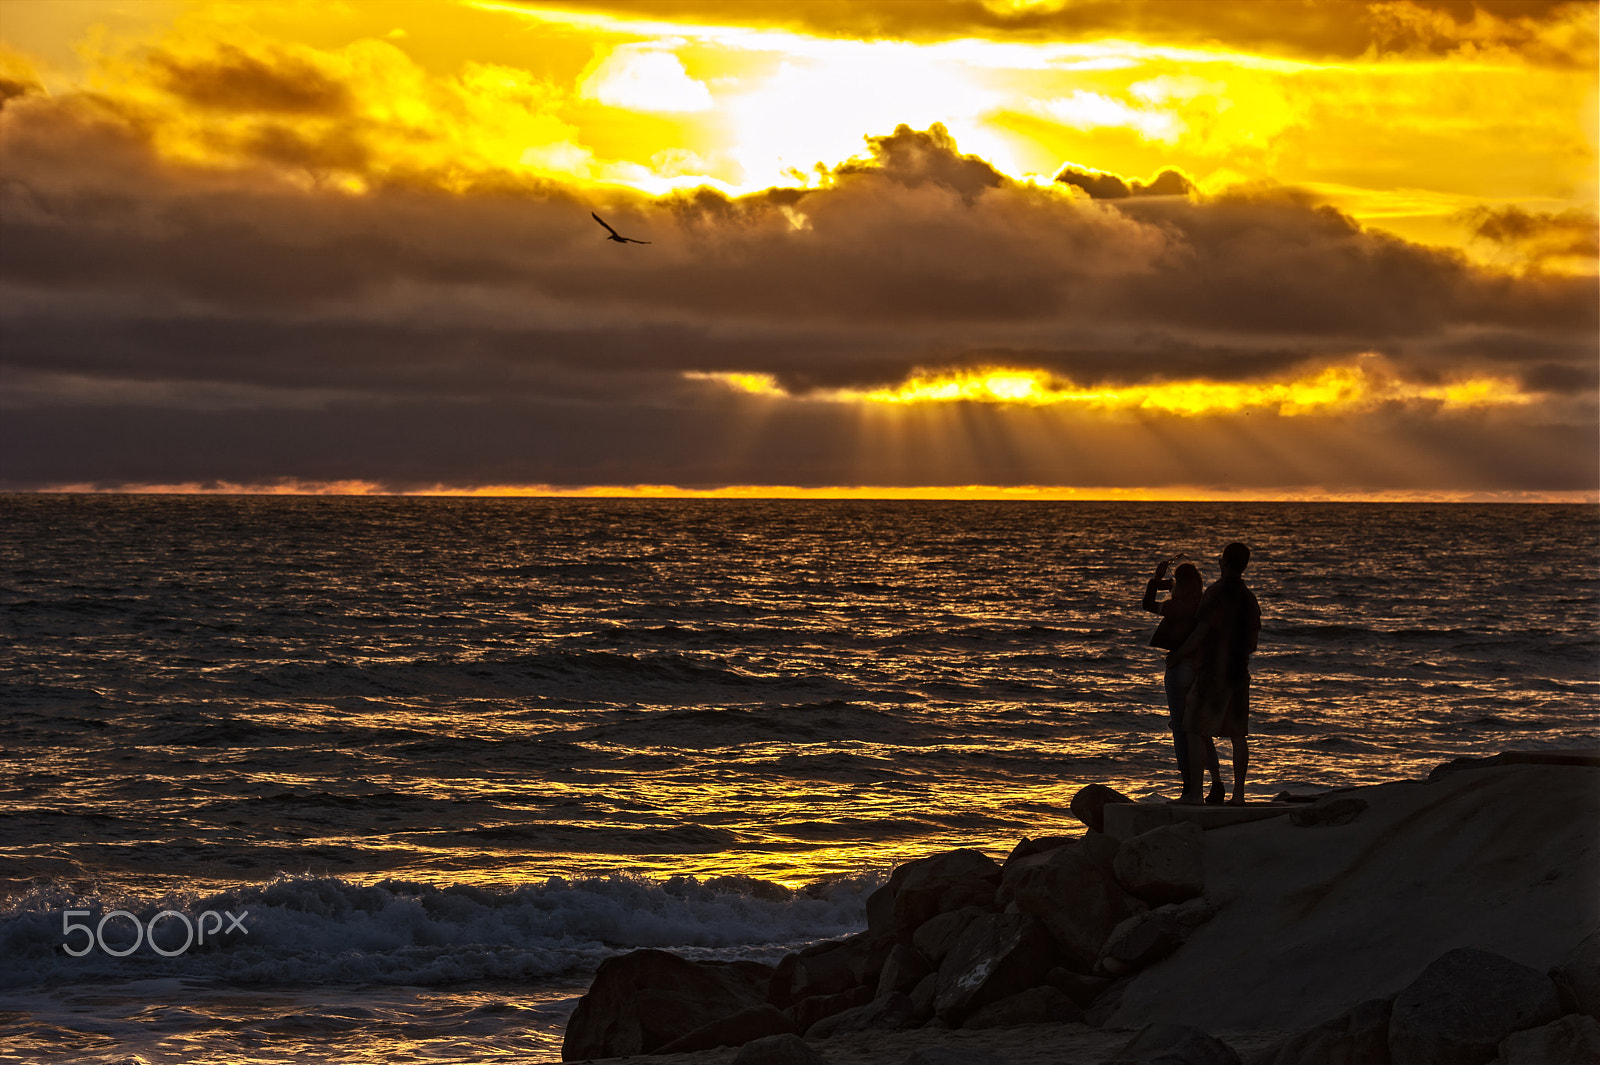 Nikon D700 + Nikon AF-S Nikkor 80-400mm F4.5-5.6G ED VR sample photo. Sunset watchers in oceanside - march 25, 2017 photography